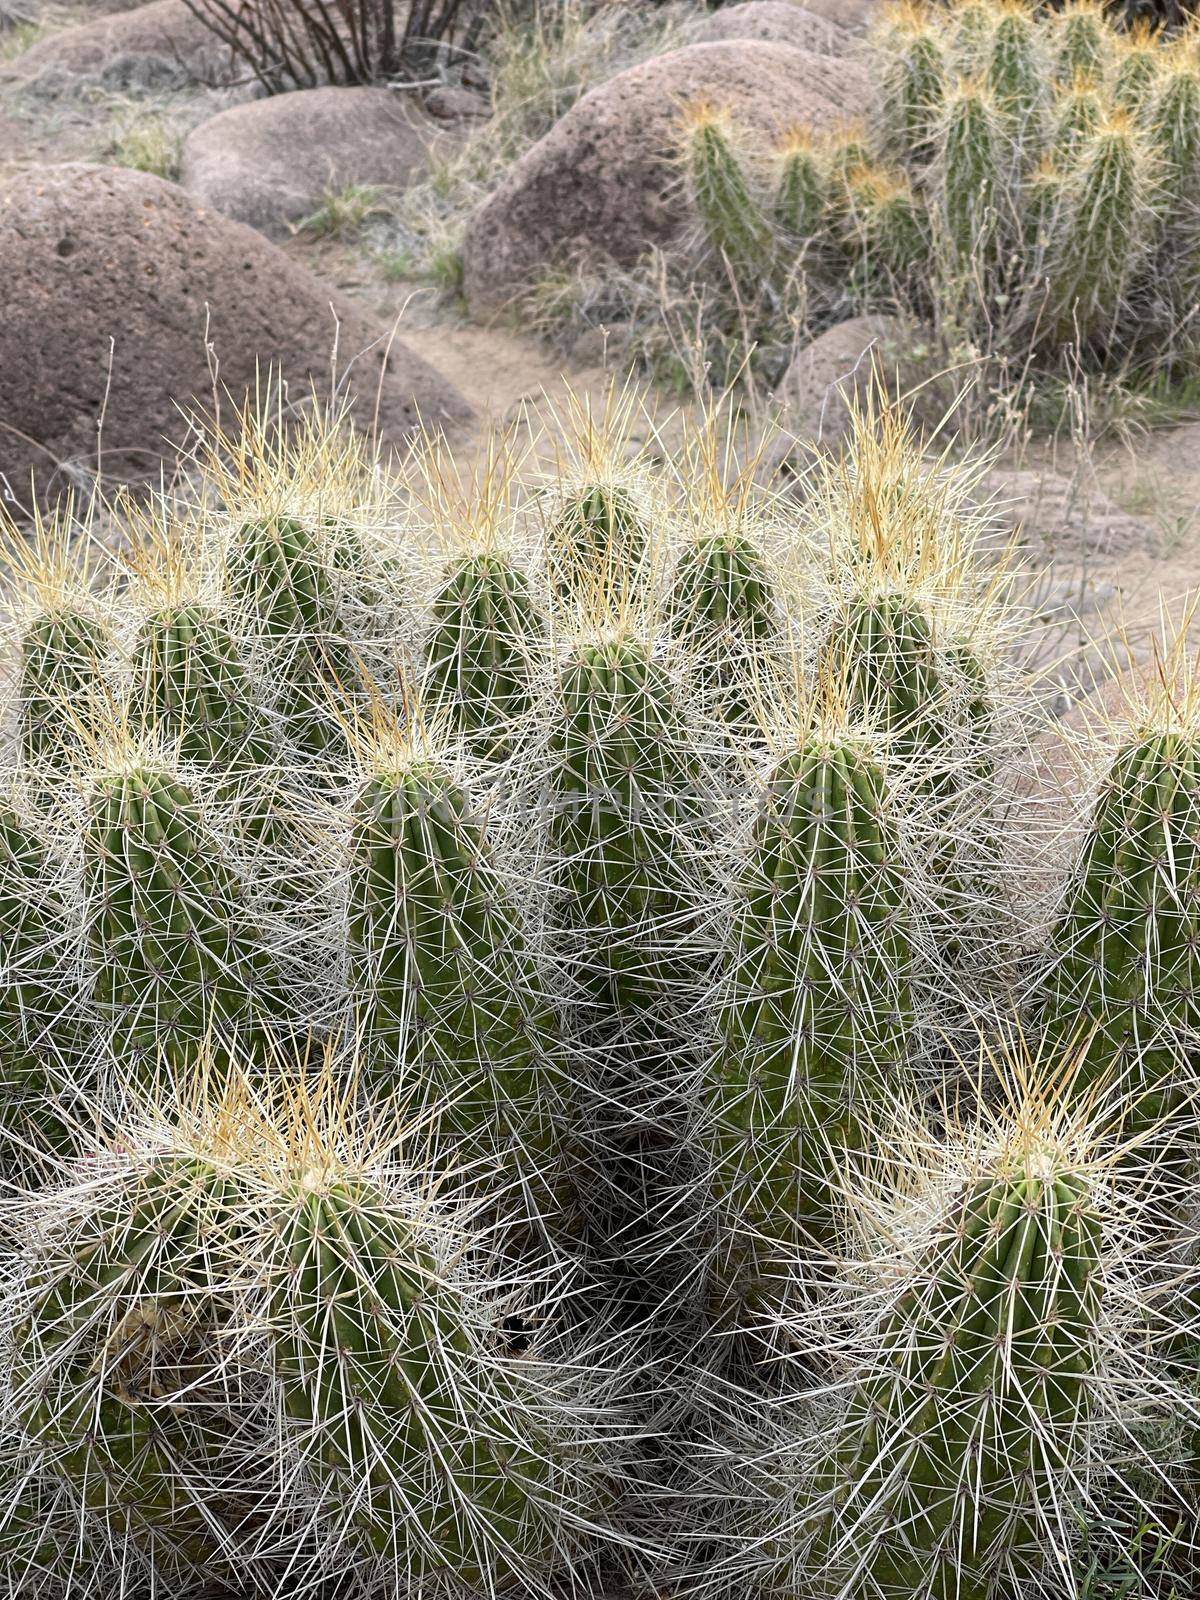 Prickly Organ Pipe Cactus in Arizona